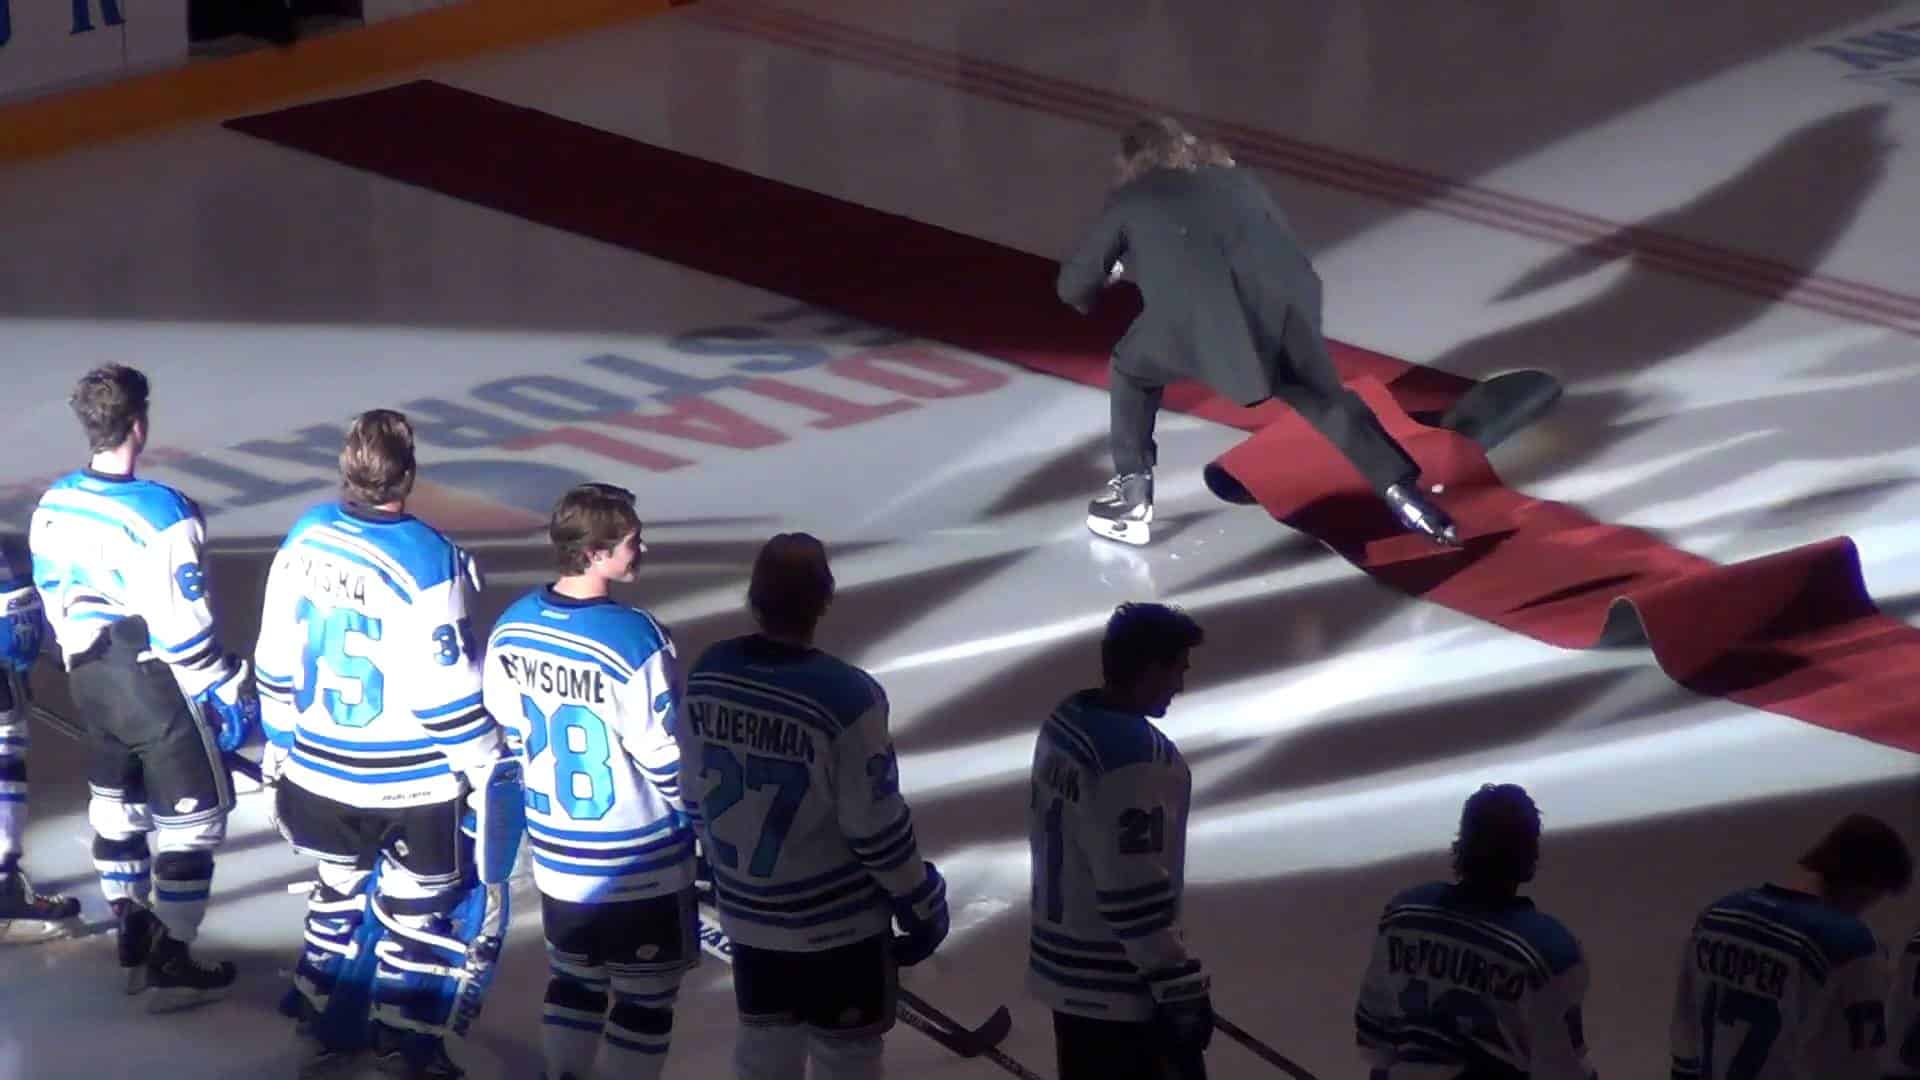 Slapstick tijdens een ijshockeywedstrijd: "Oh Canada" On Ice